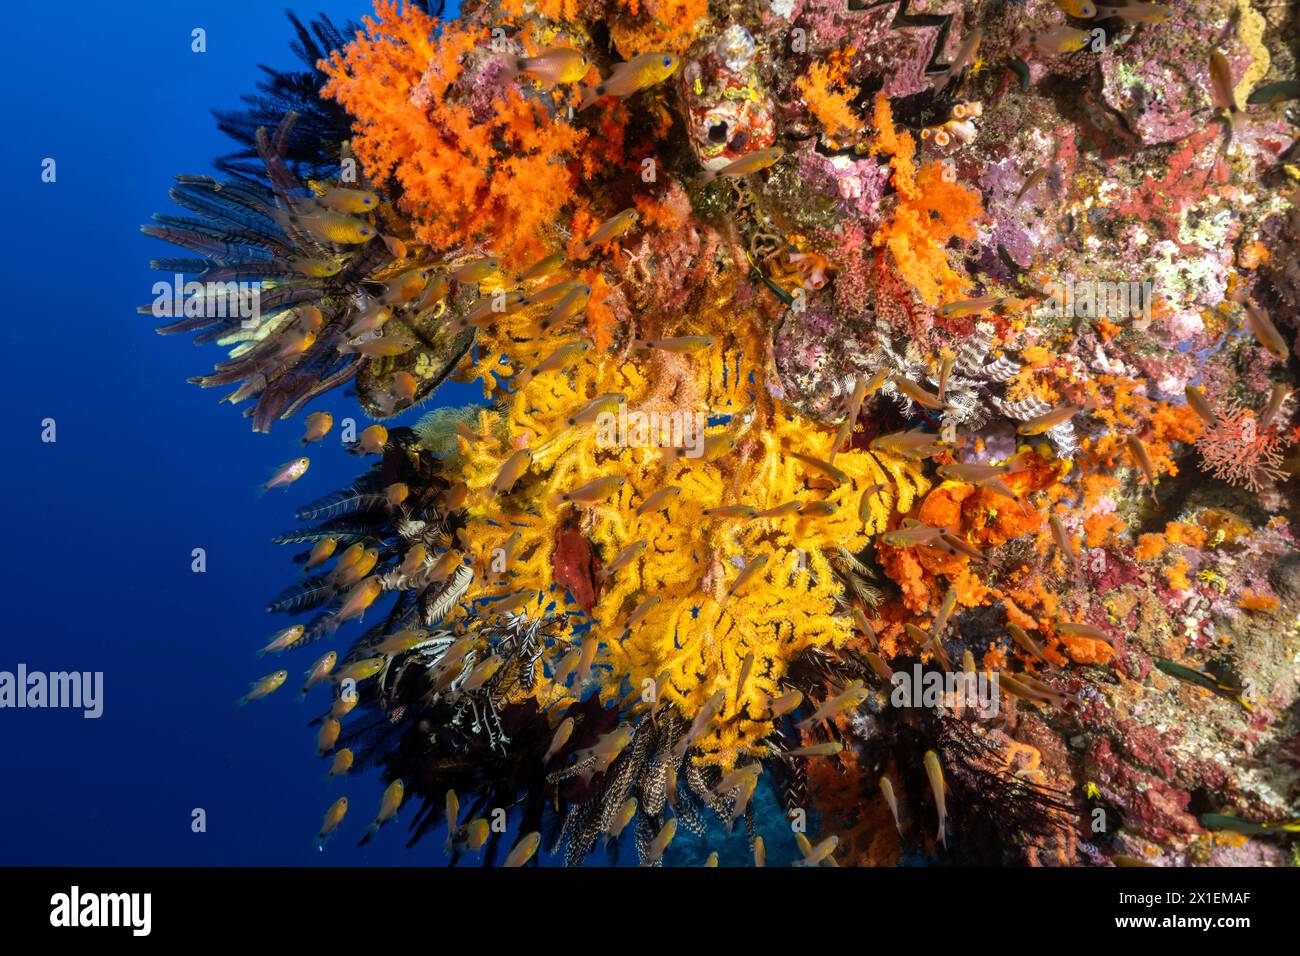 Buntes Riff mit weichen Korallen, Krinoiden und Ringtaien, Apogon aureus, Raja Ampat Indonesien. Stockfoto